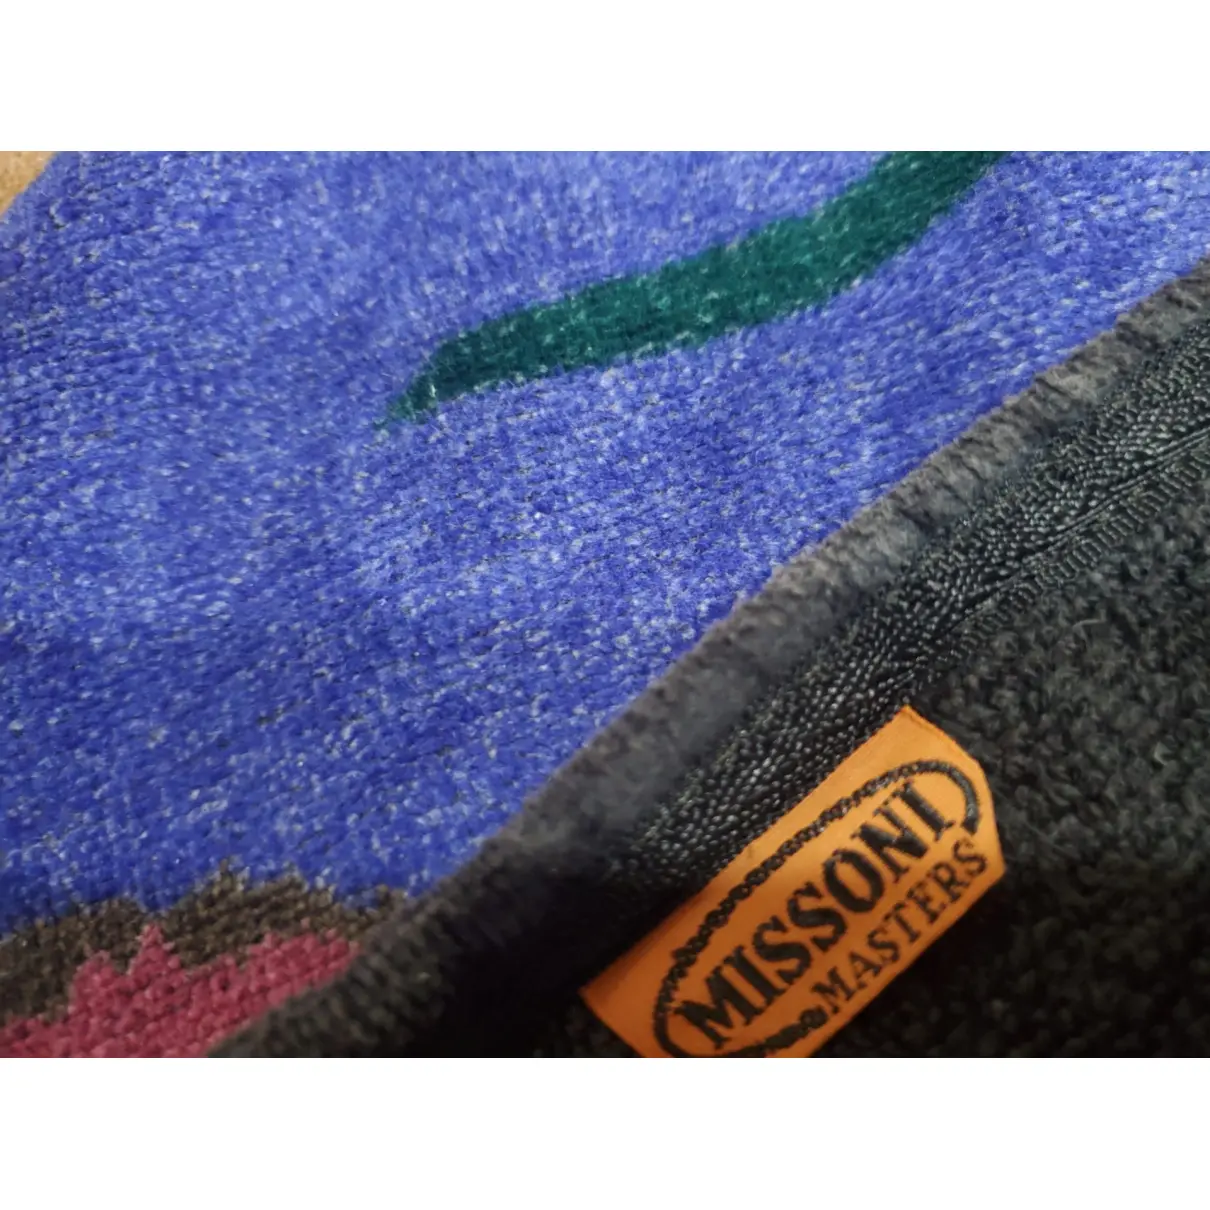 Buy Missoni Textiles online